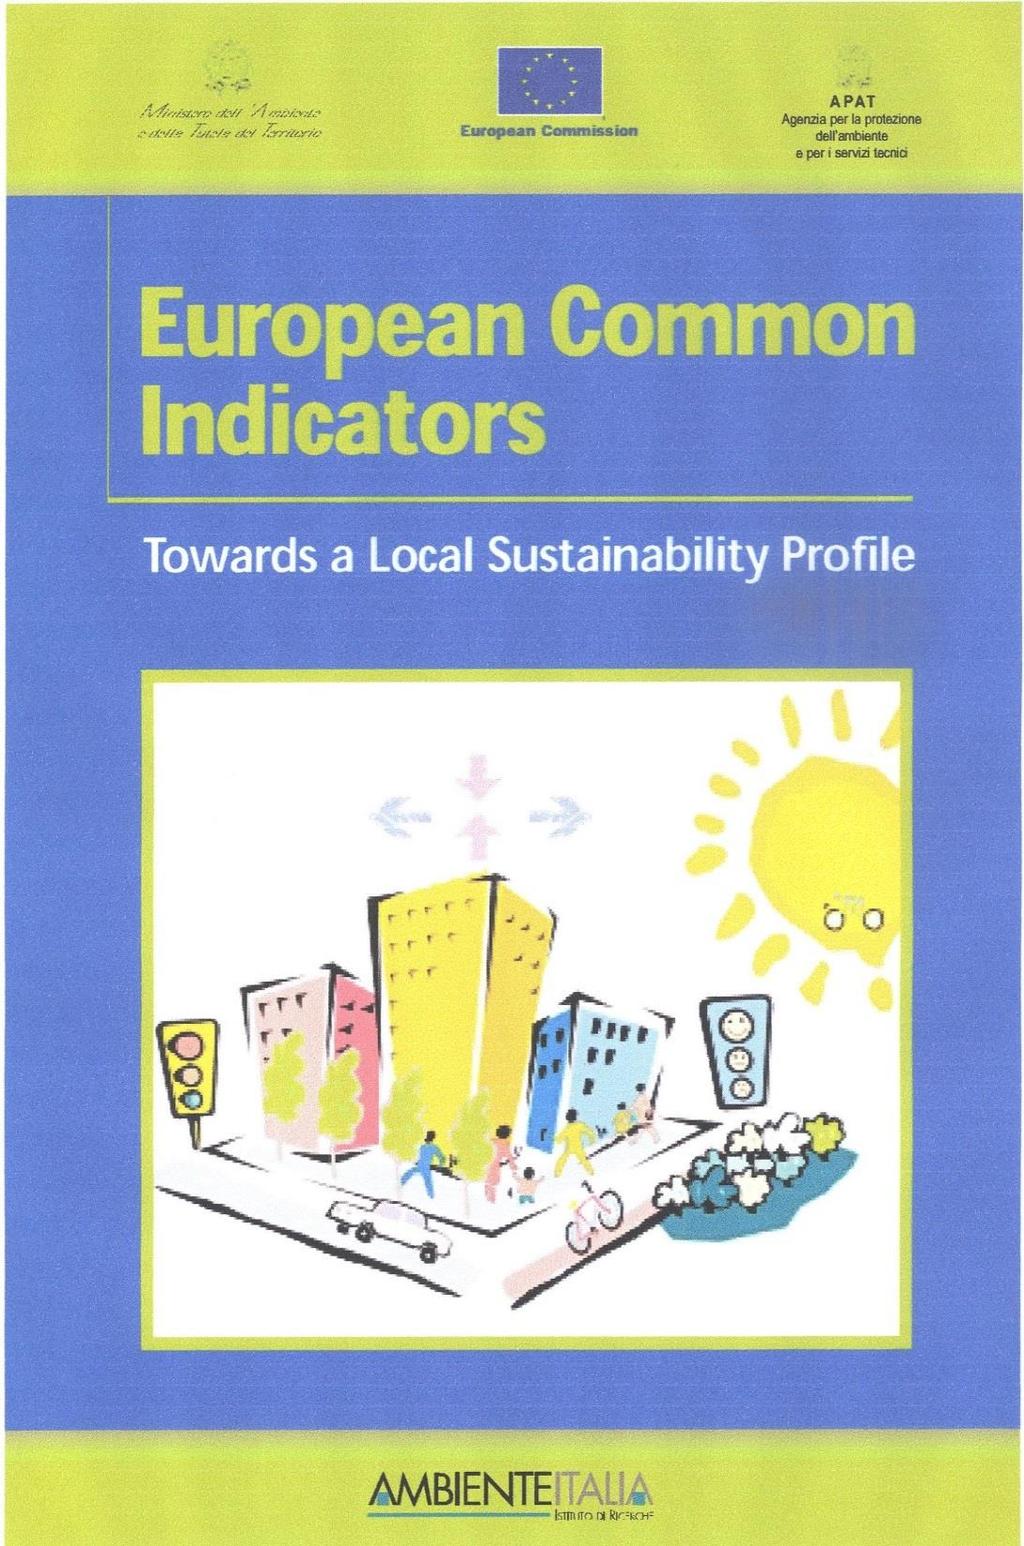 Badania stanu istniejącego Komisja Europejska opublikowała w 2002 roku Interim Report, w którym badacze uwzględnili 10 grup problemowych: satysfakcję mieszkańców z mieszkania w danej lokalnej